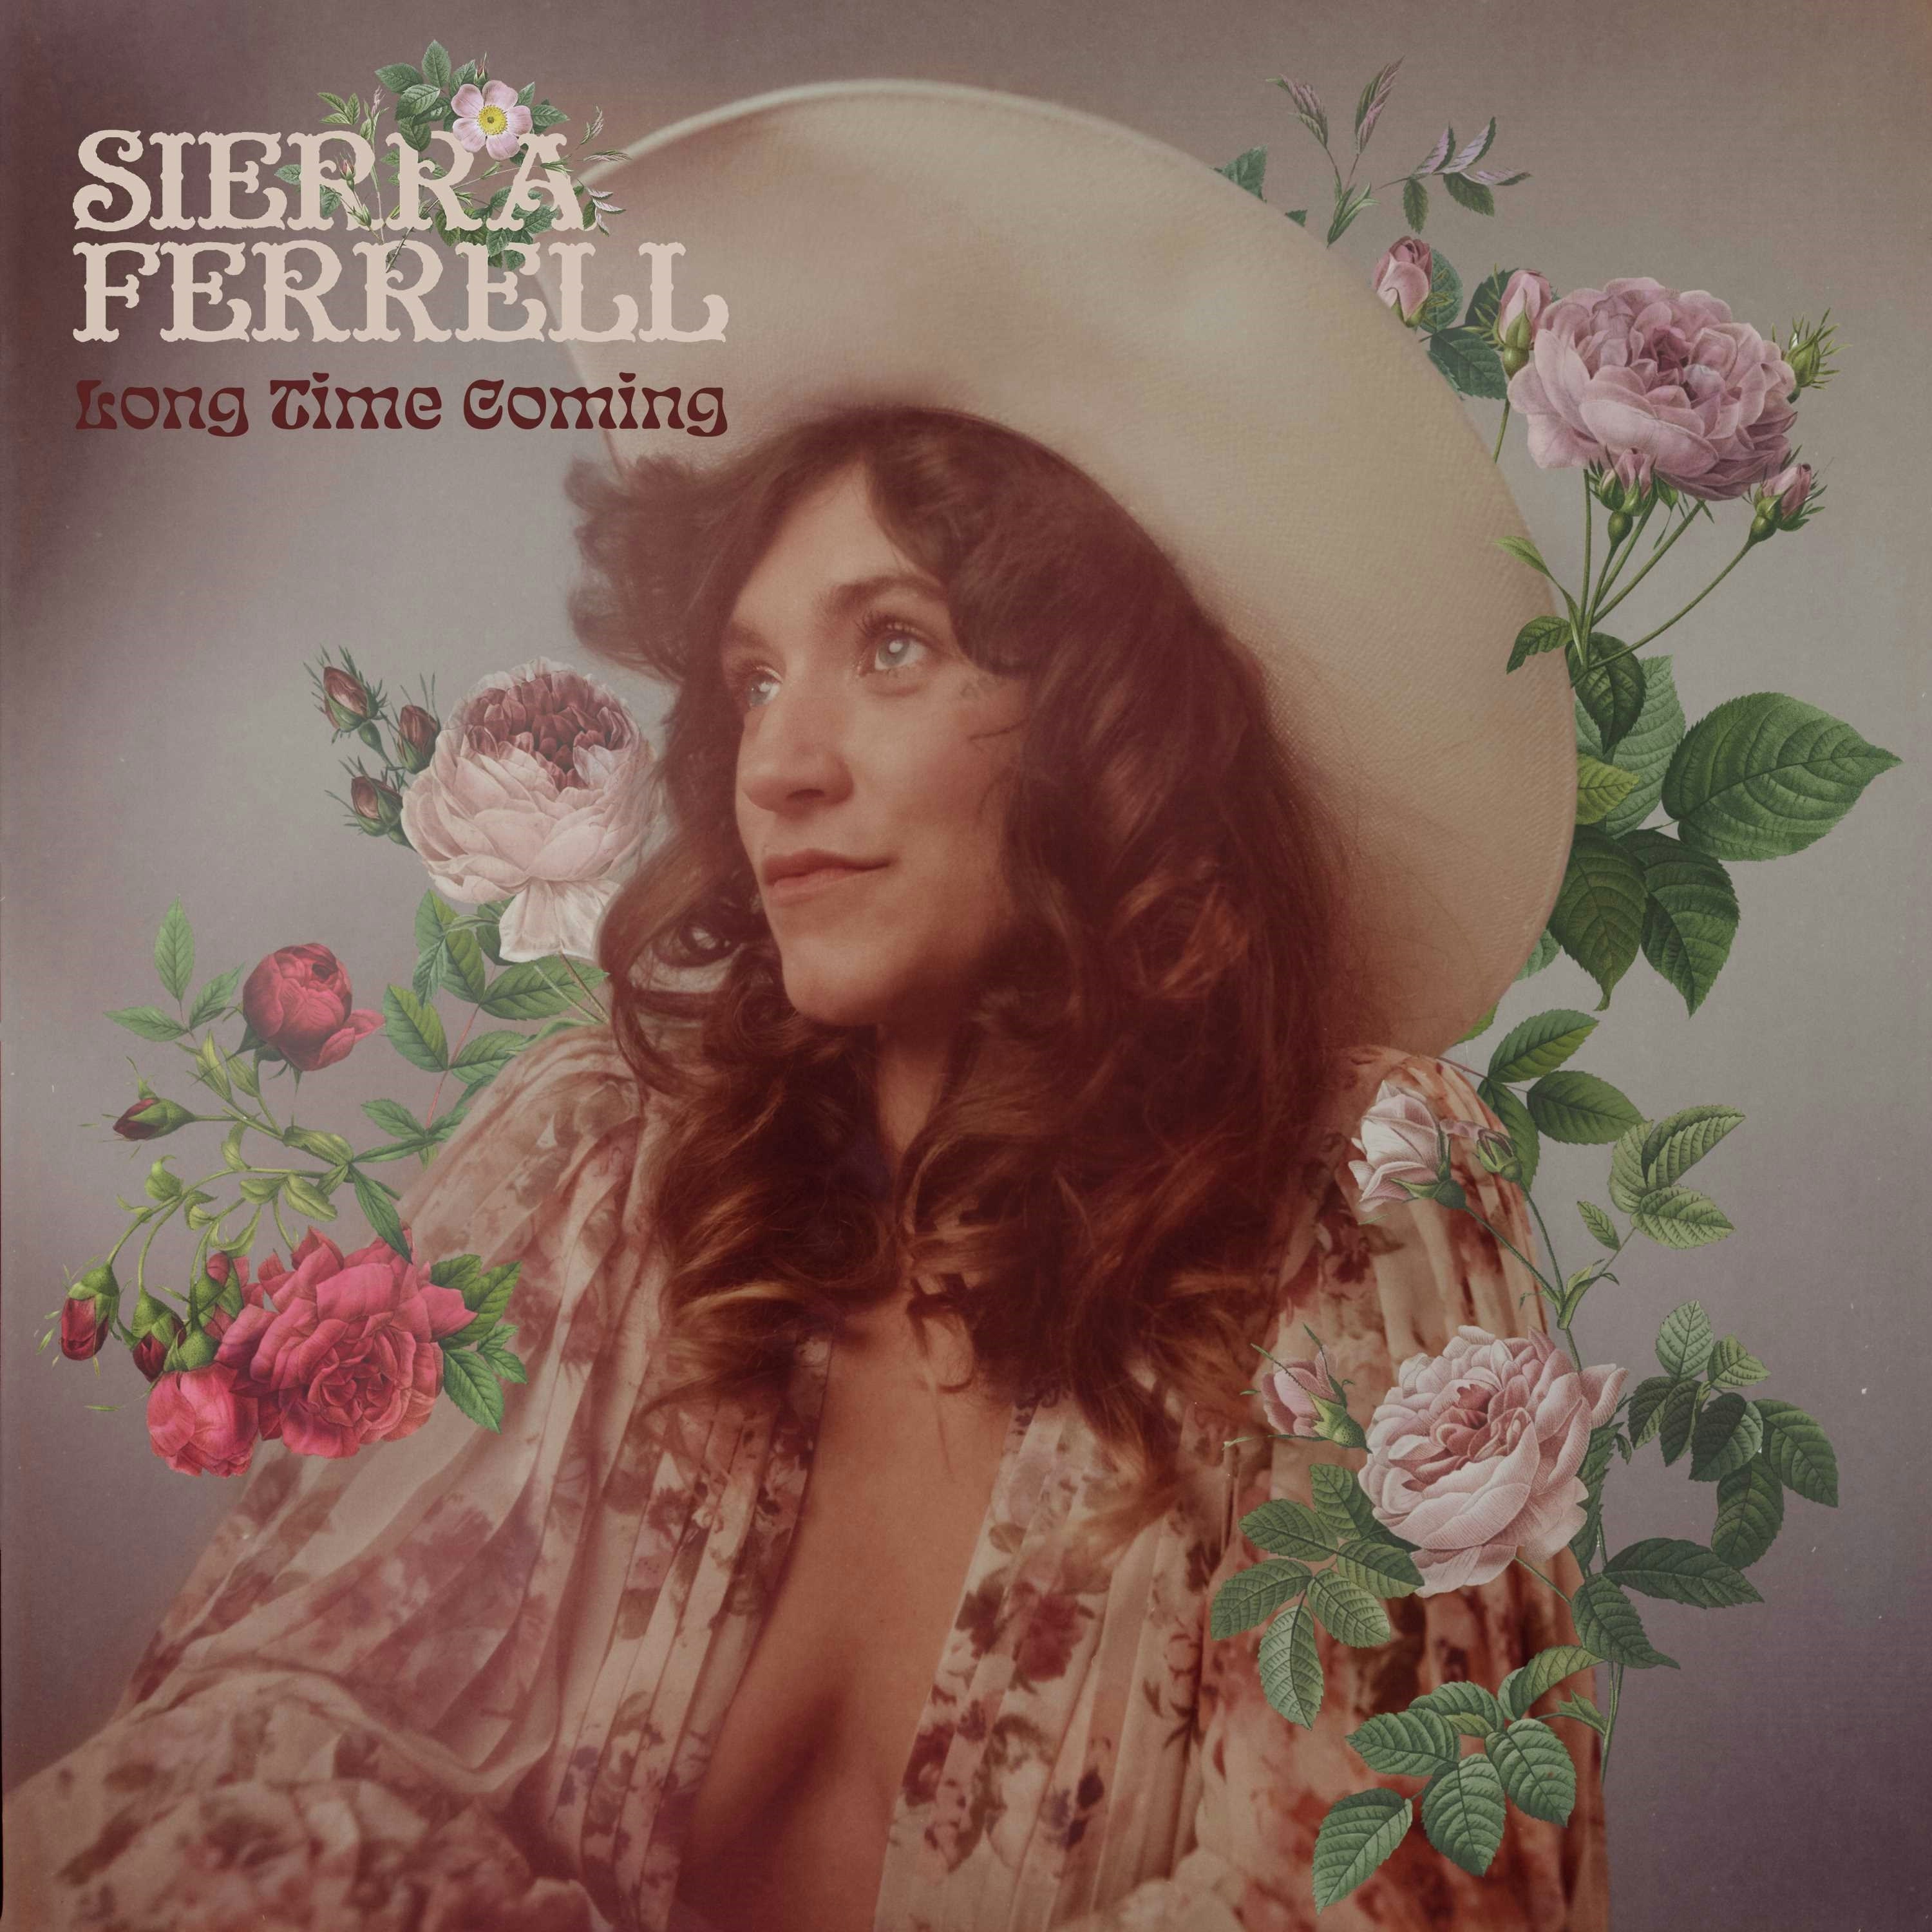 Album artwork for Long Time Coming by Sierra Ferrell